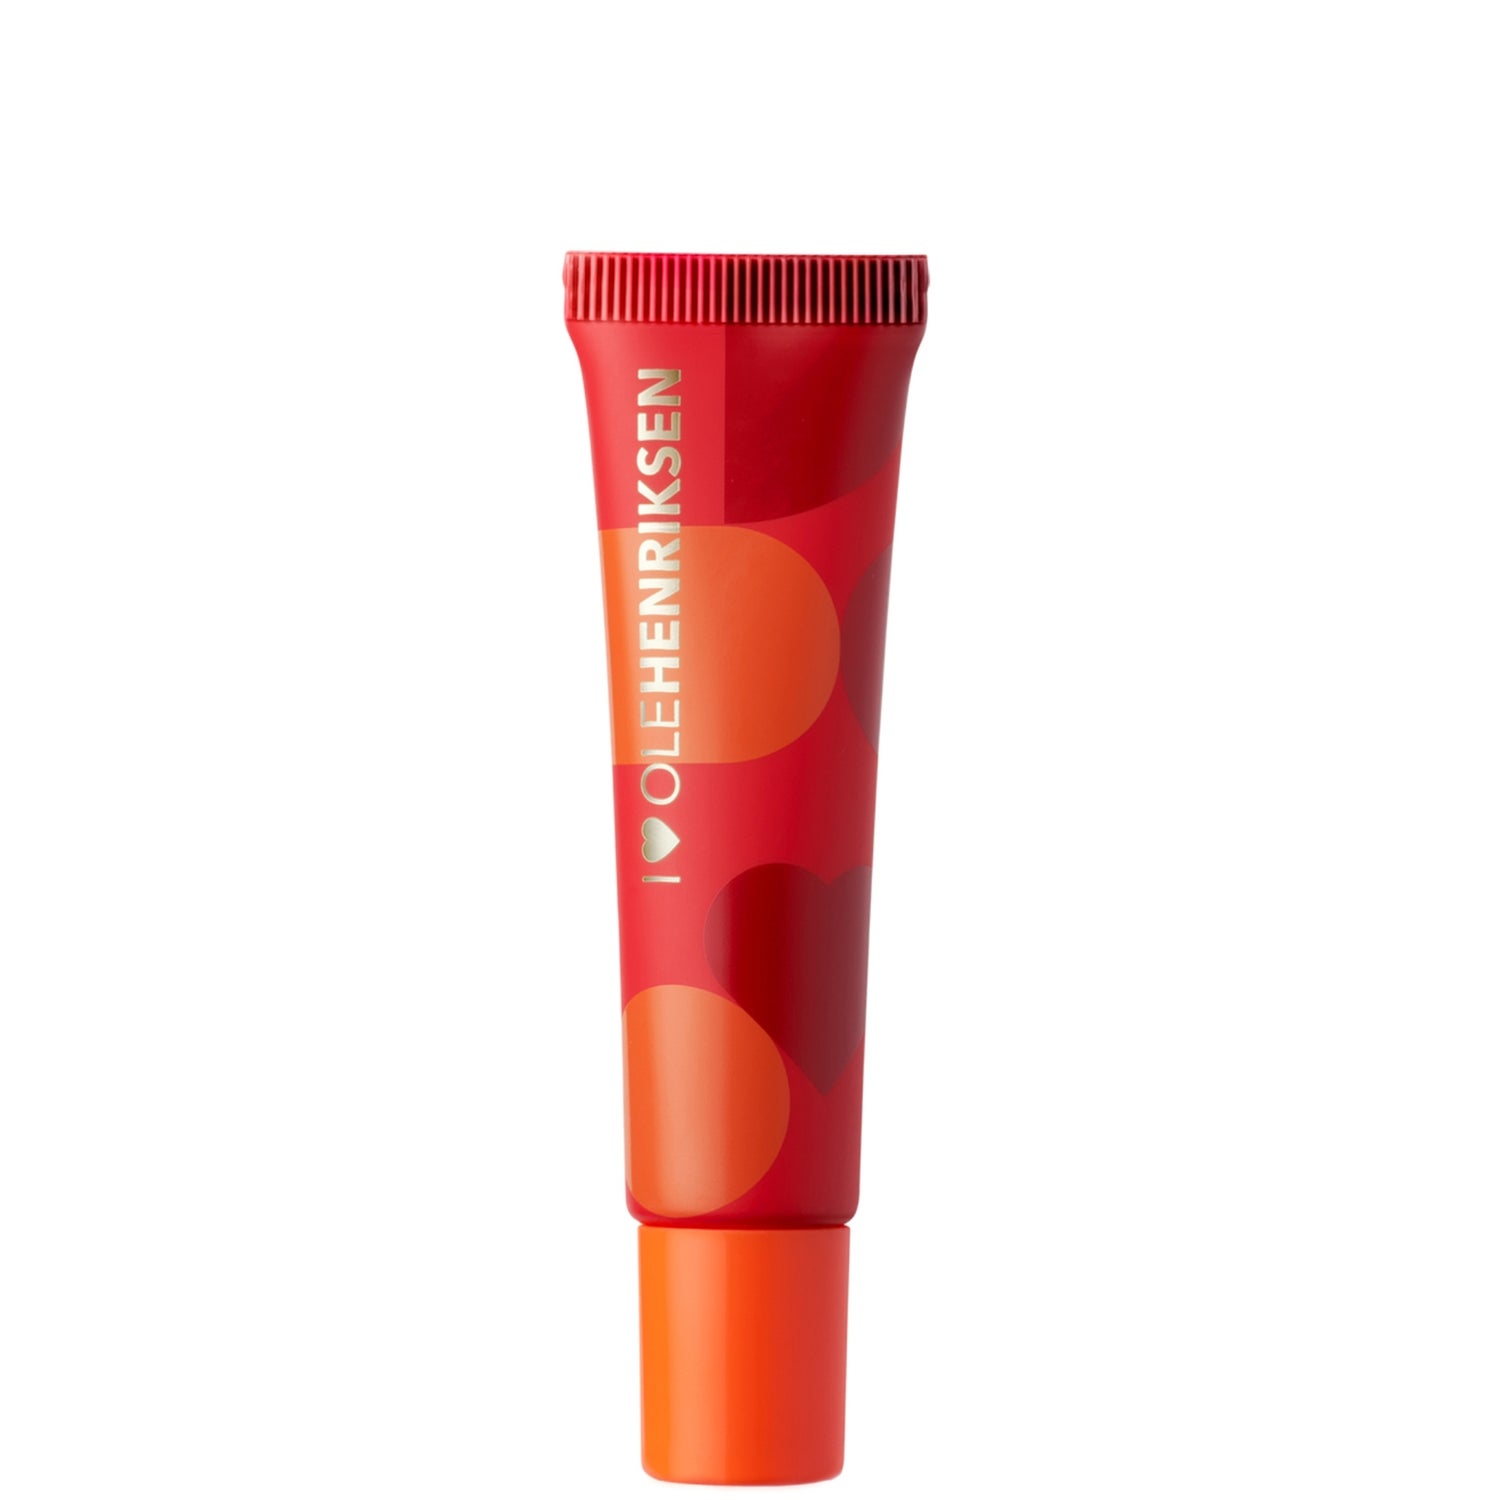 OLE HENRIKSEN Blood Orange Spritz Pout Preserve Lip Treatment 12ml